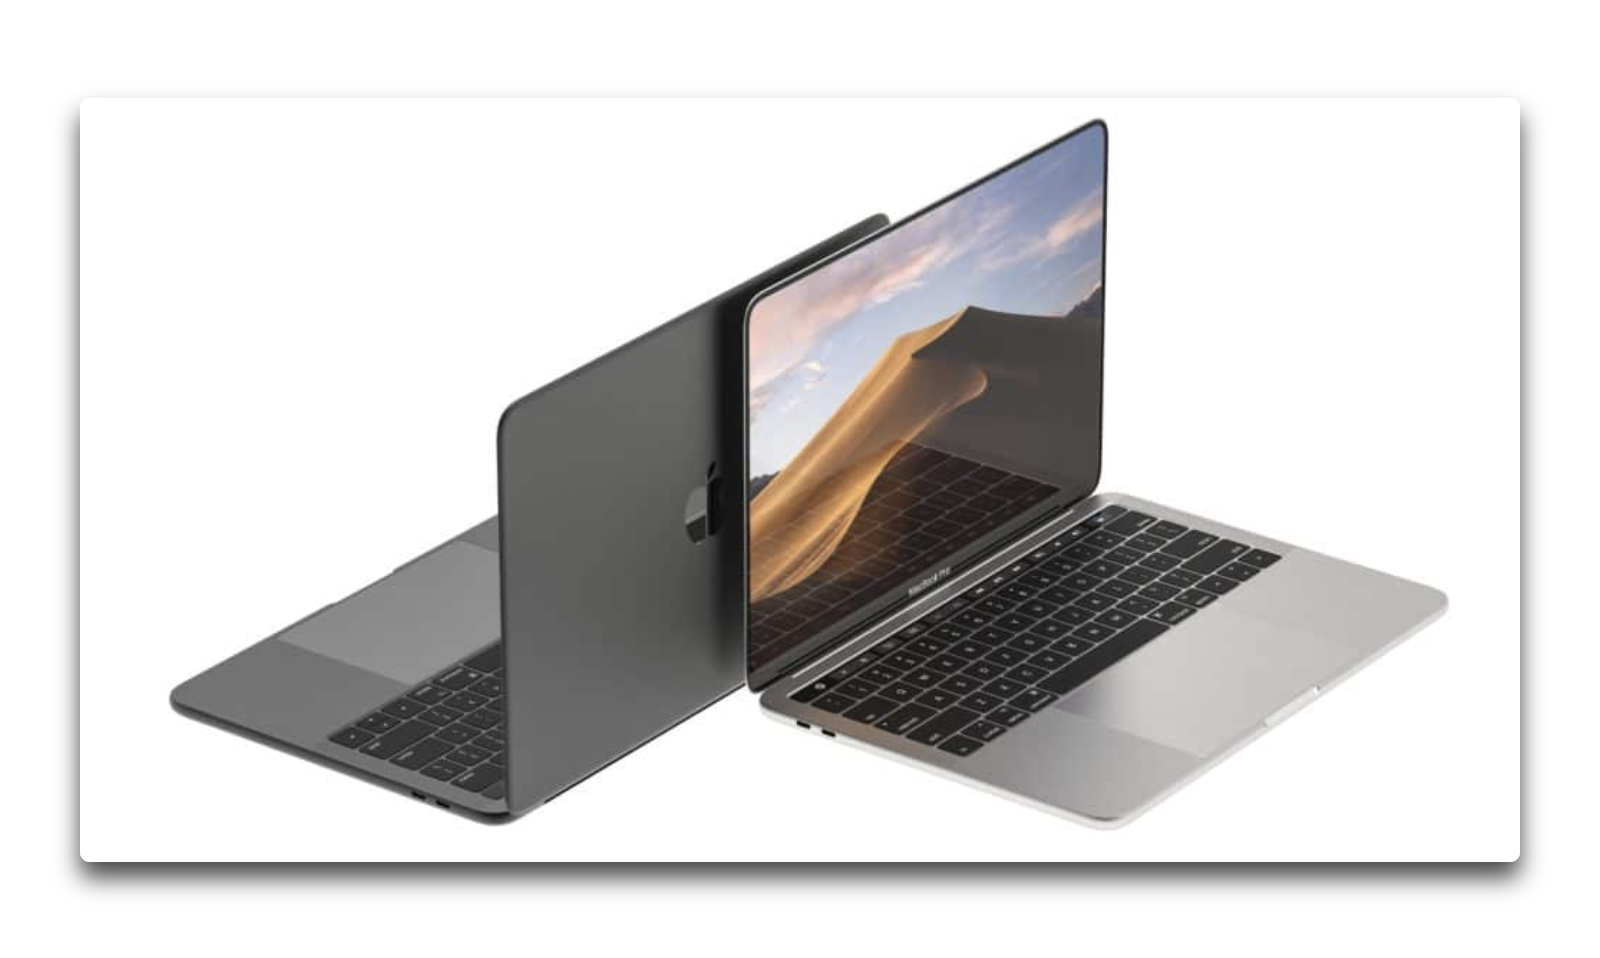 MacBook Proのコンセプトビデオ、丸みの端のOLEDディスプレイやFace IDの正面カメラ